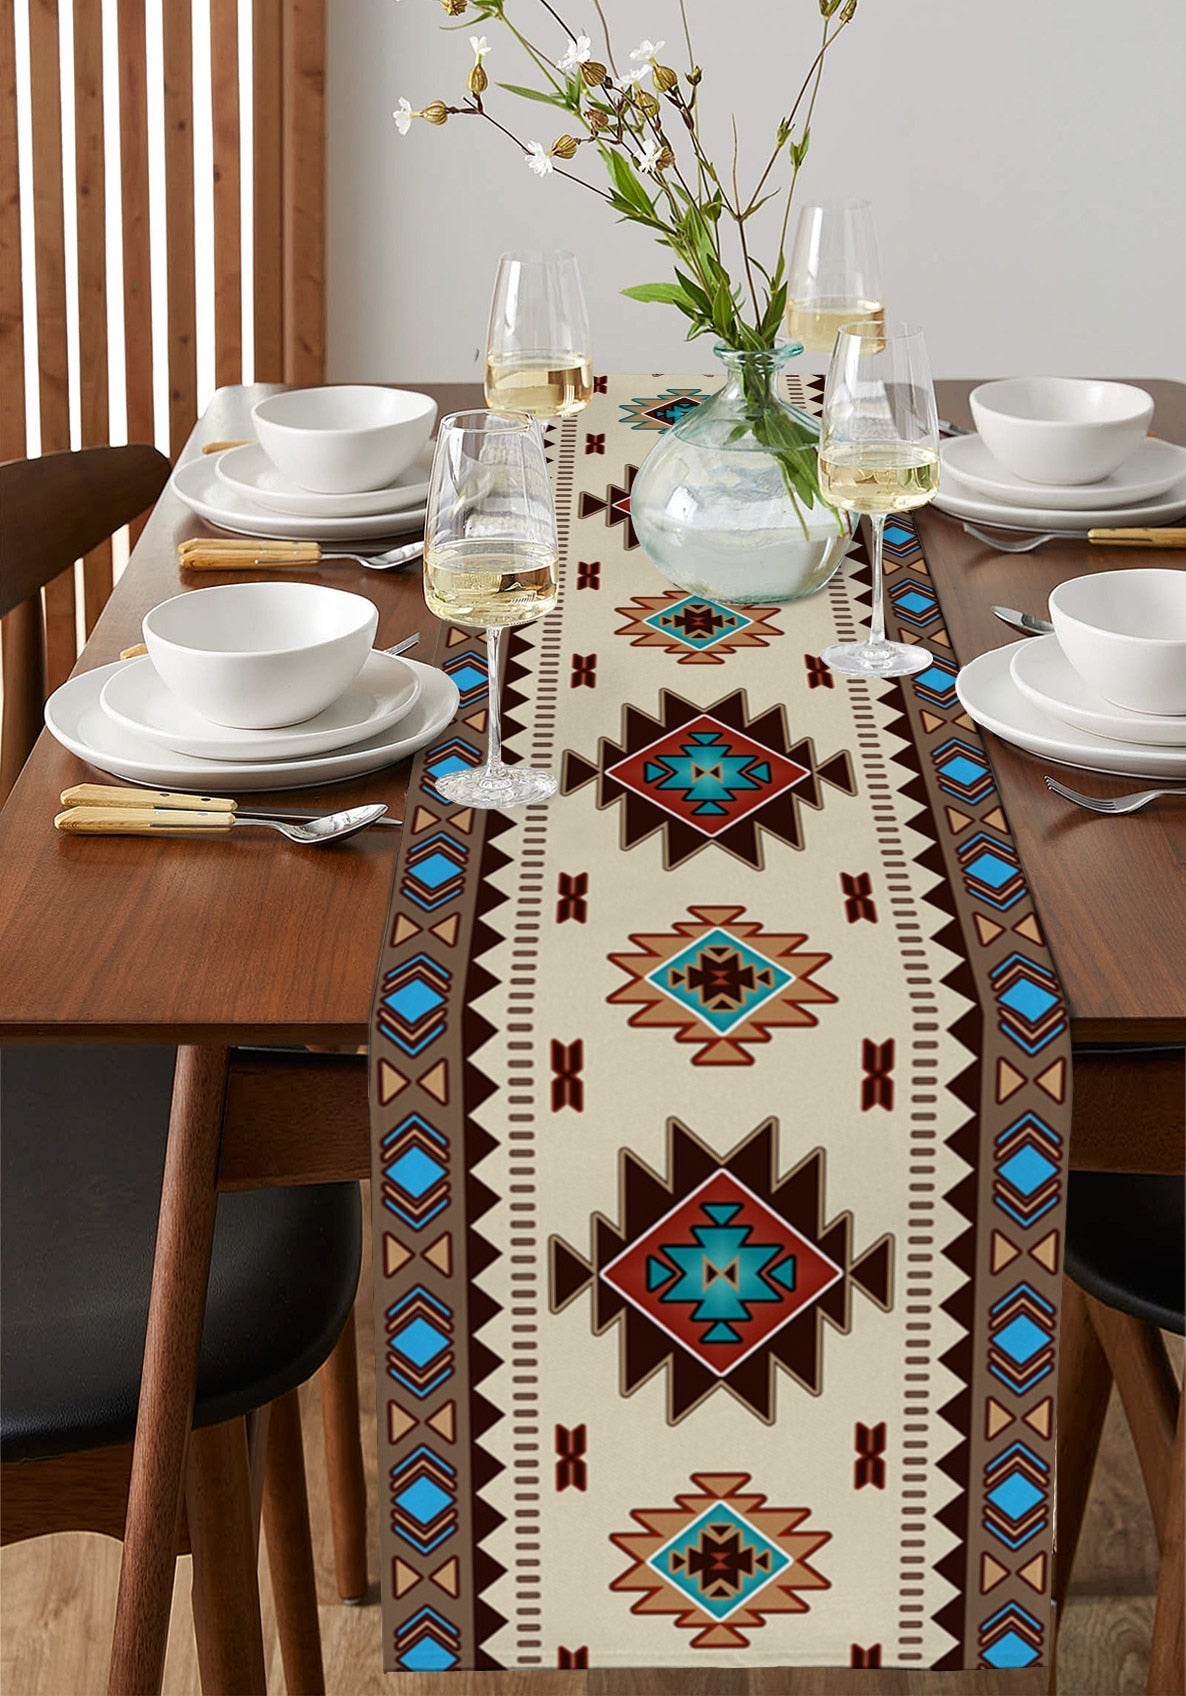 Boheemse etnische geometrie linnen tafellopers Holiday Party Decor herbruikbare tafellopers voor eettafel bruiloftdecoraties